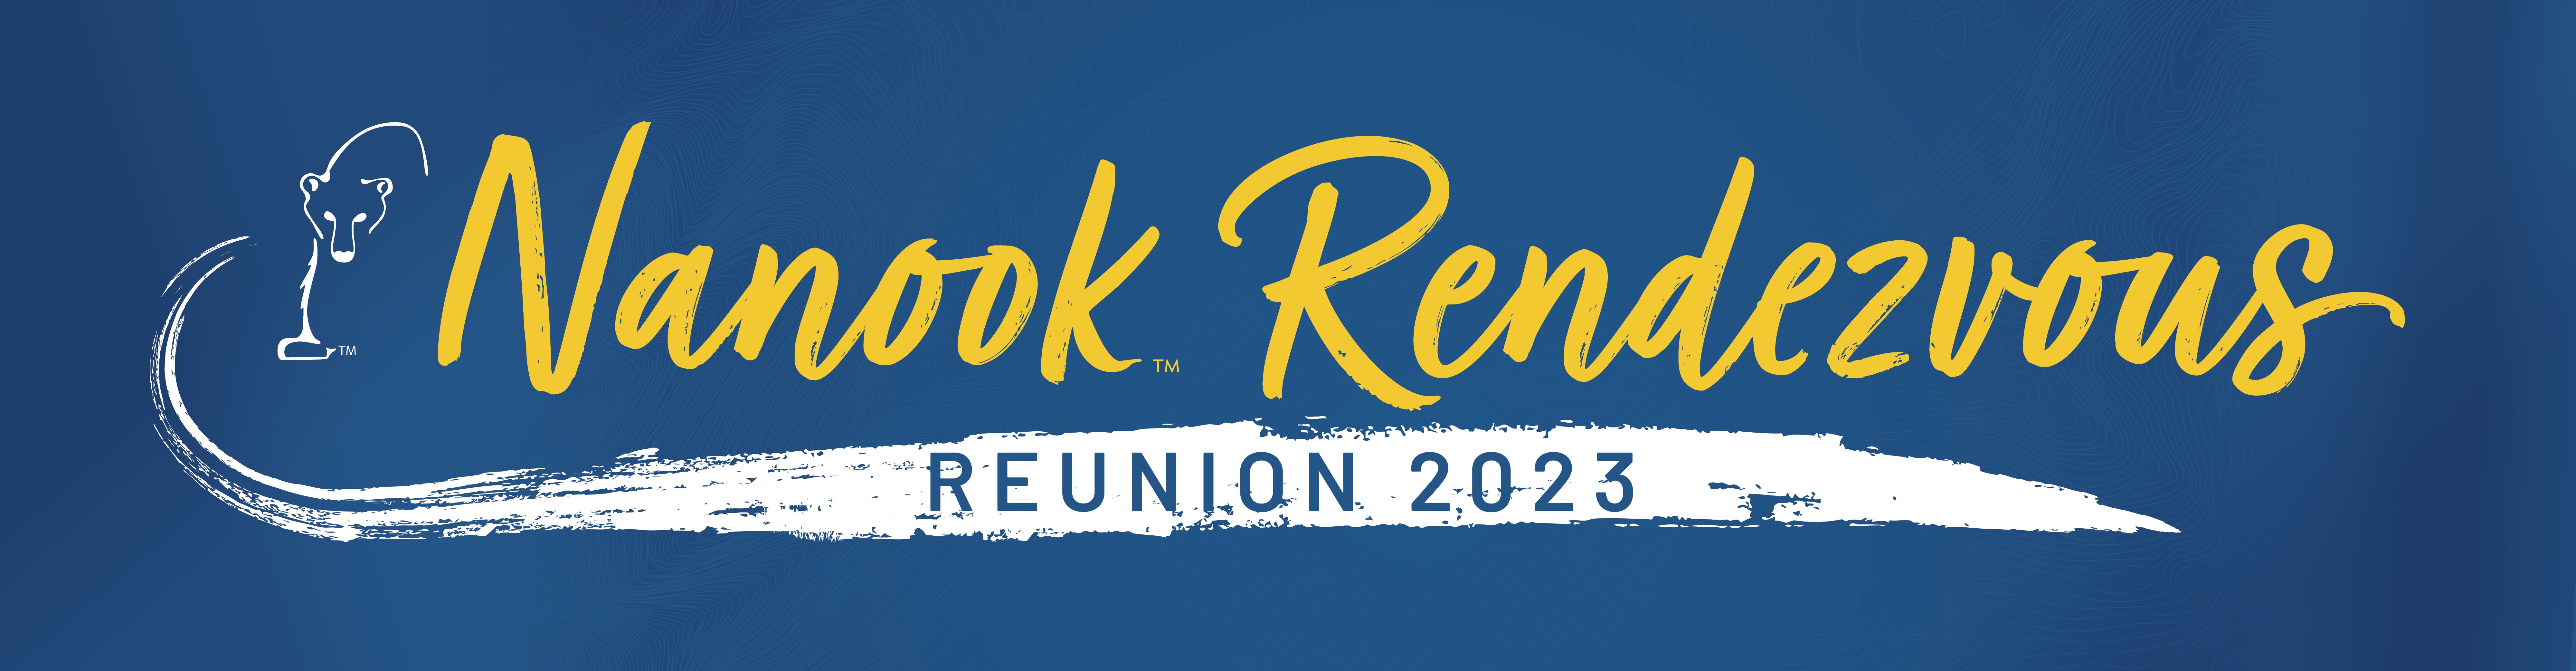 2023 Nanook Rendezvous